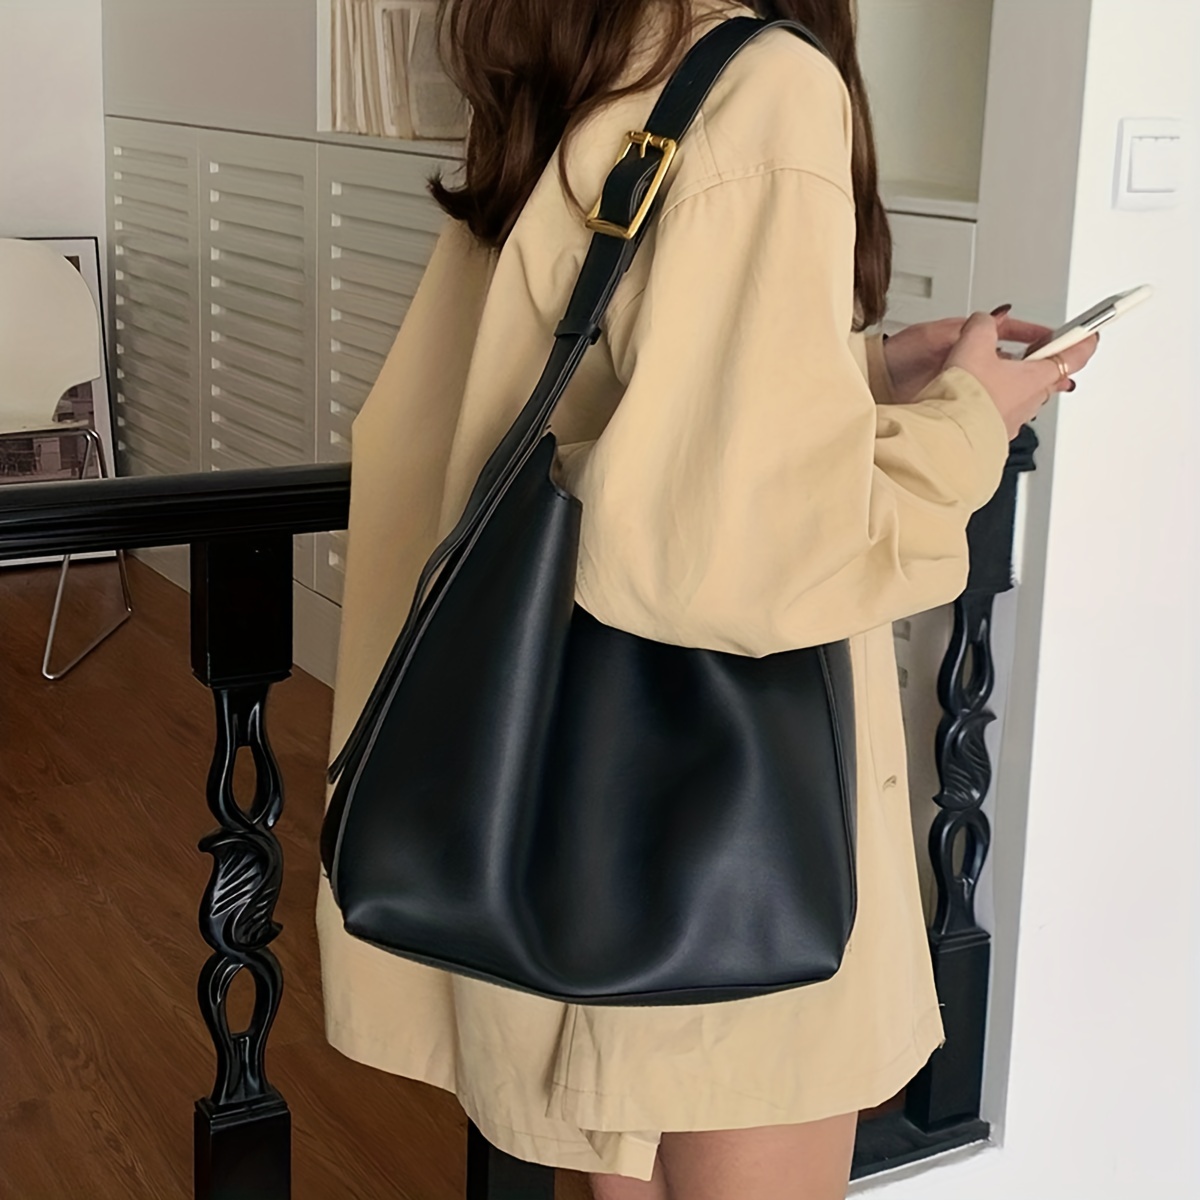 Casual Minimalist Hobo Shoulder Bag, Solid Color Versatile Handbag, Lightweight Work Bag For Women,Quilted,$6.39,Black